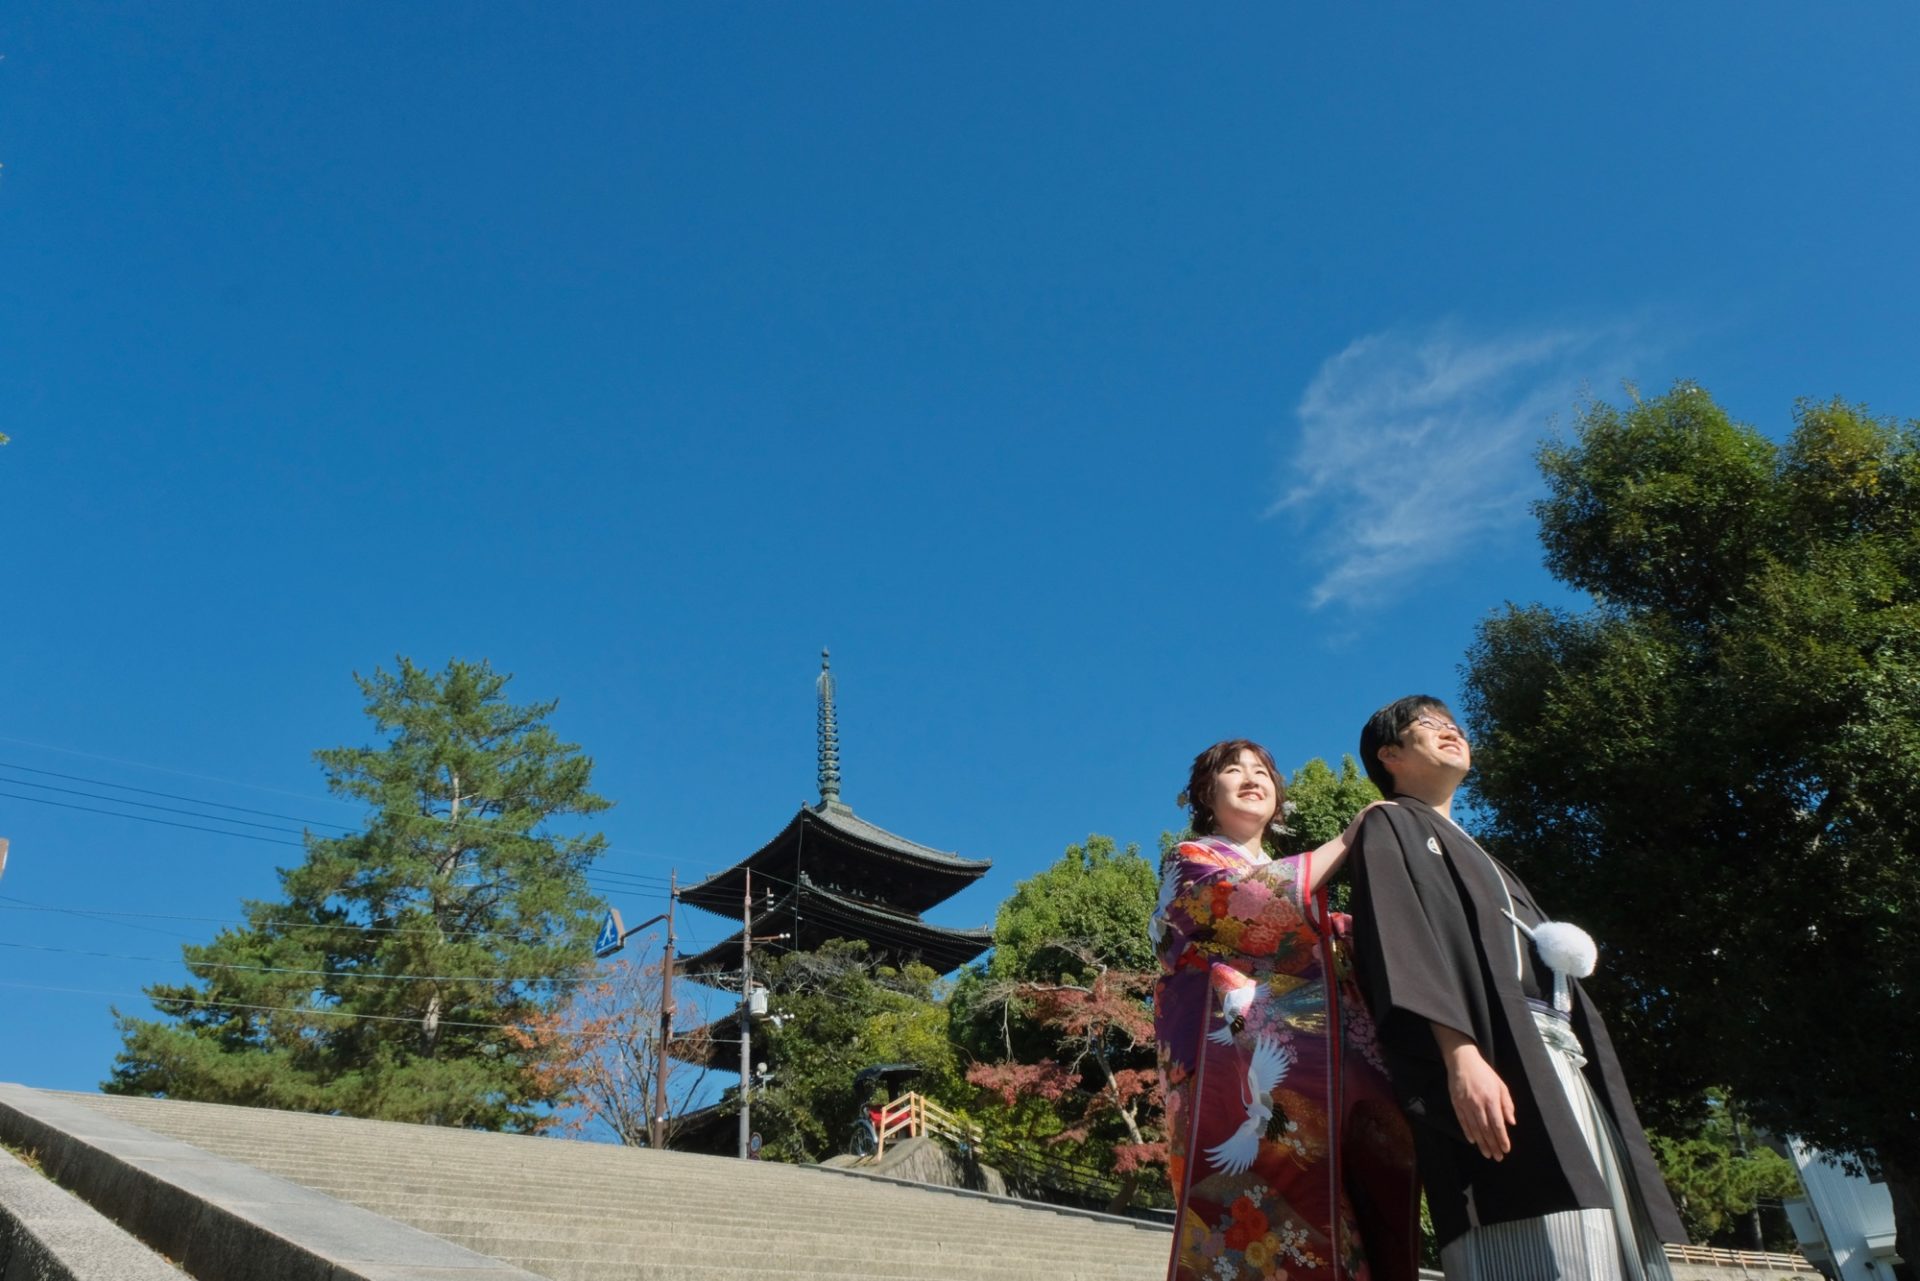 【和装で結婚式の前撮り】愛知県から大好きな場所でのロケーションフォトウエディング